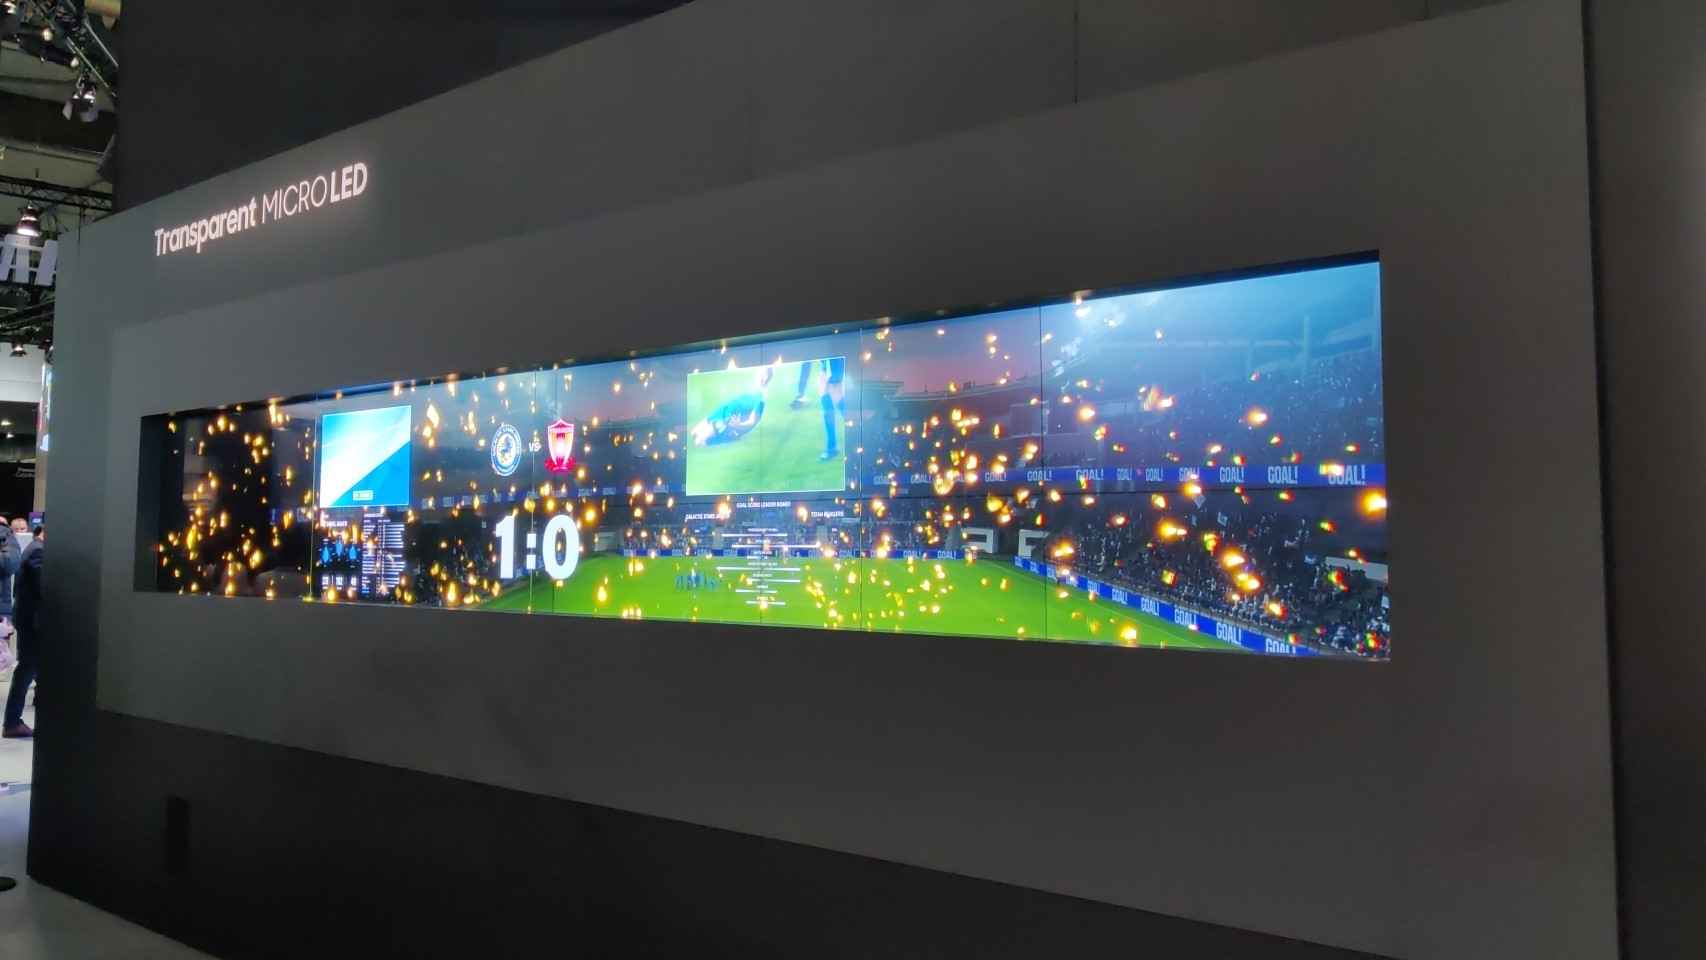 Los palcos de fútbol son una de las posibles aplicaciones de la Transparent MicroLED de Samsung